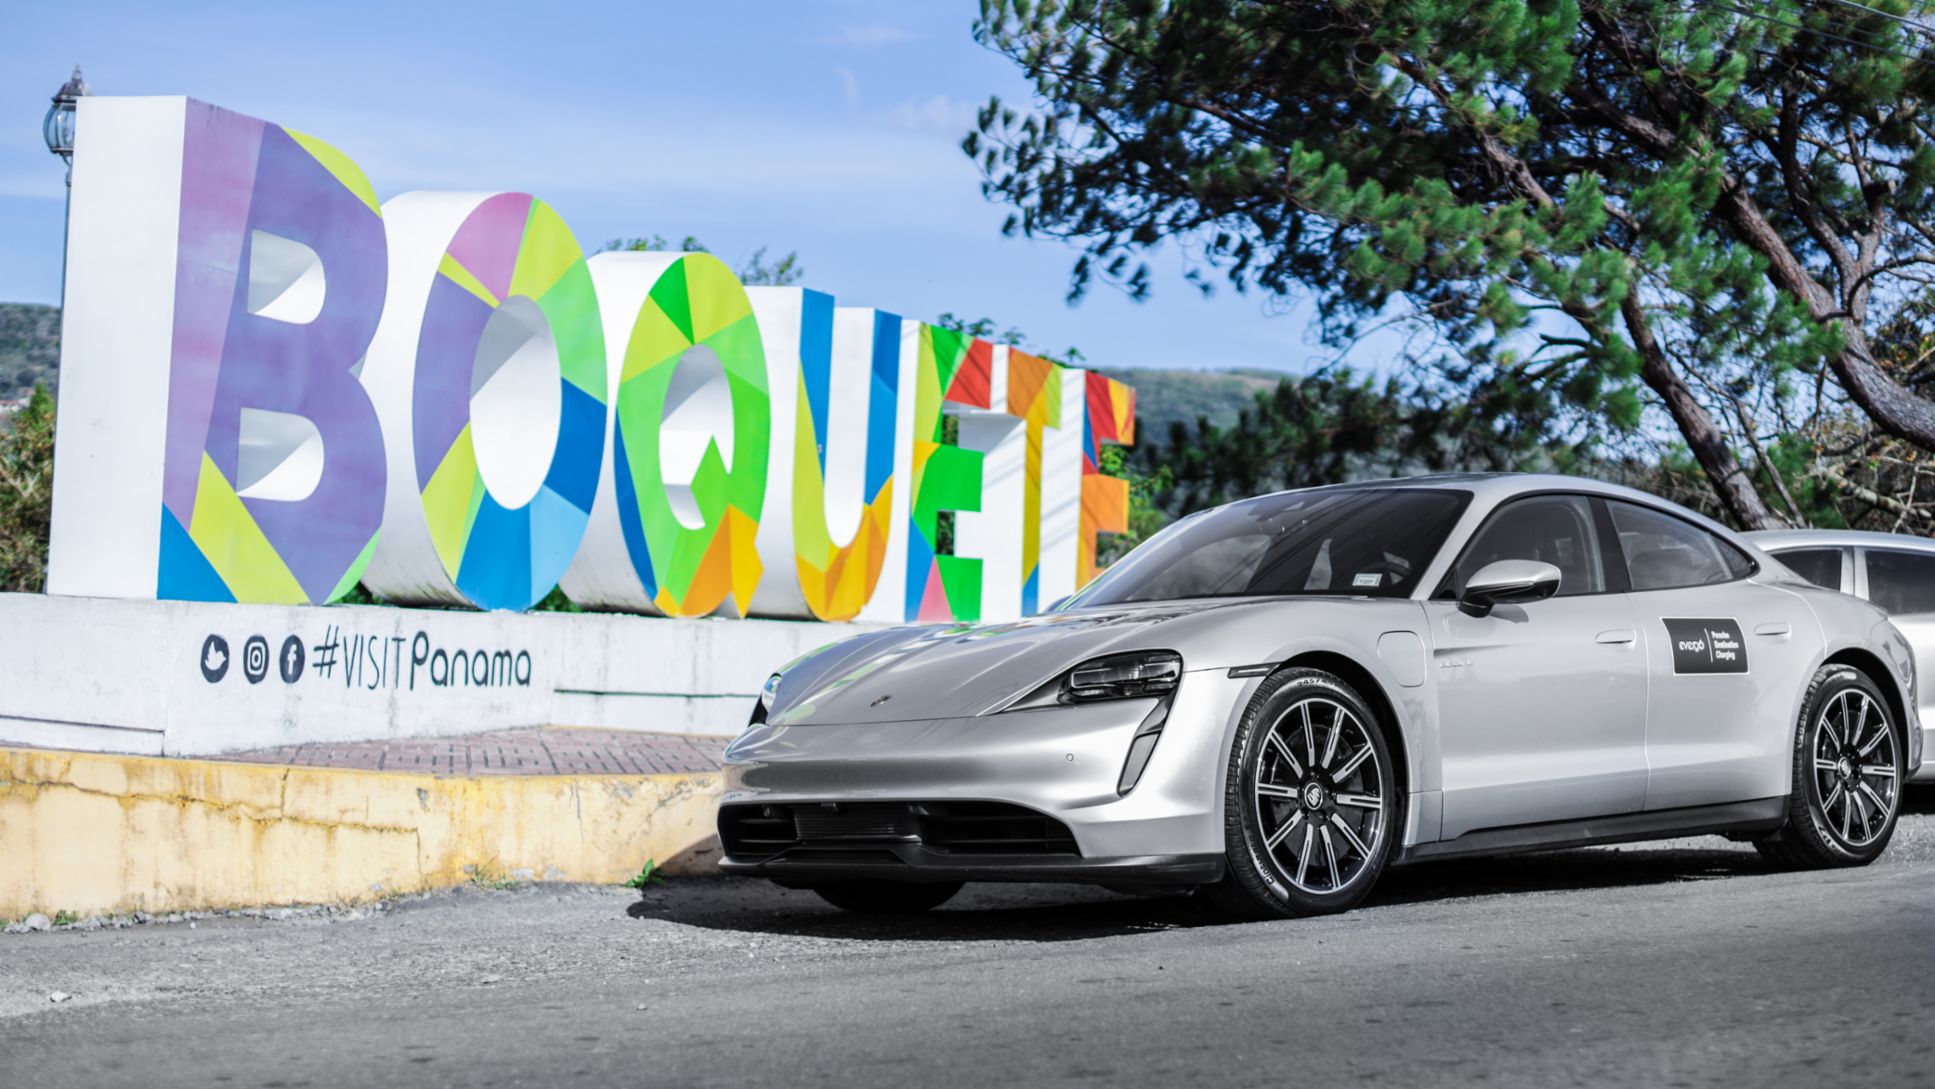 El Porsche Taycan llega a Boquete para inaugurar tres estaciones de carga